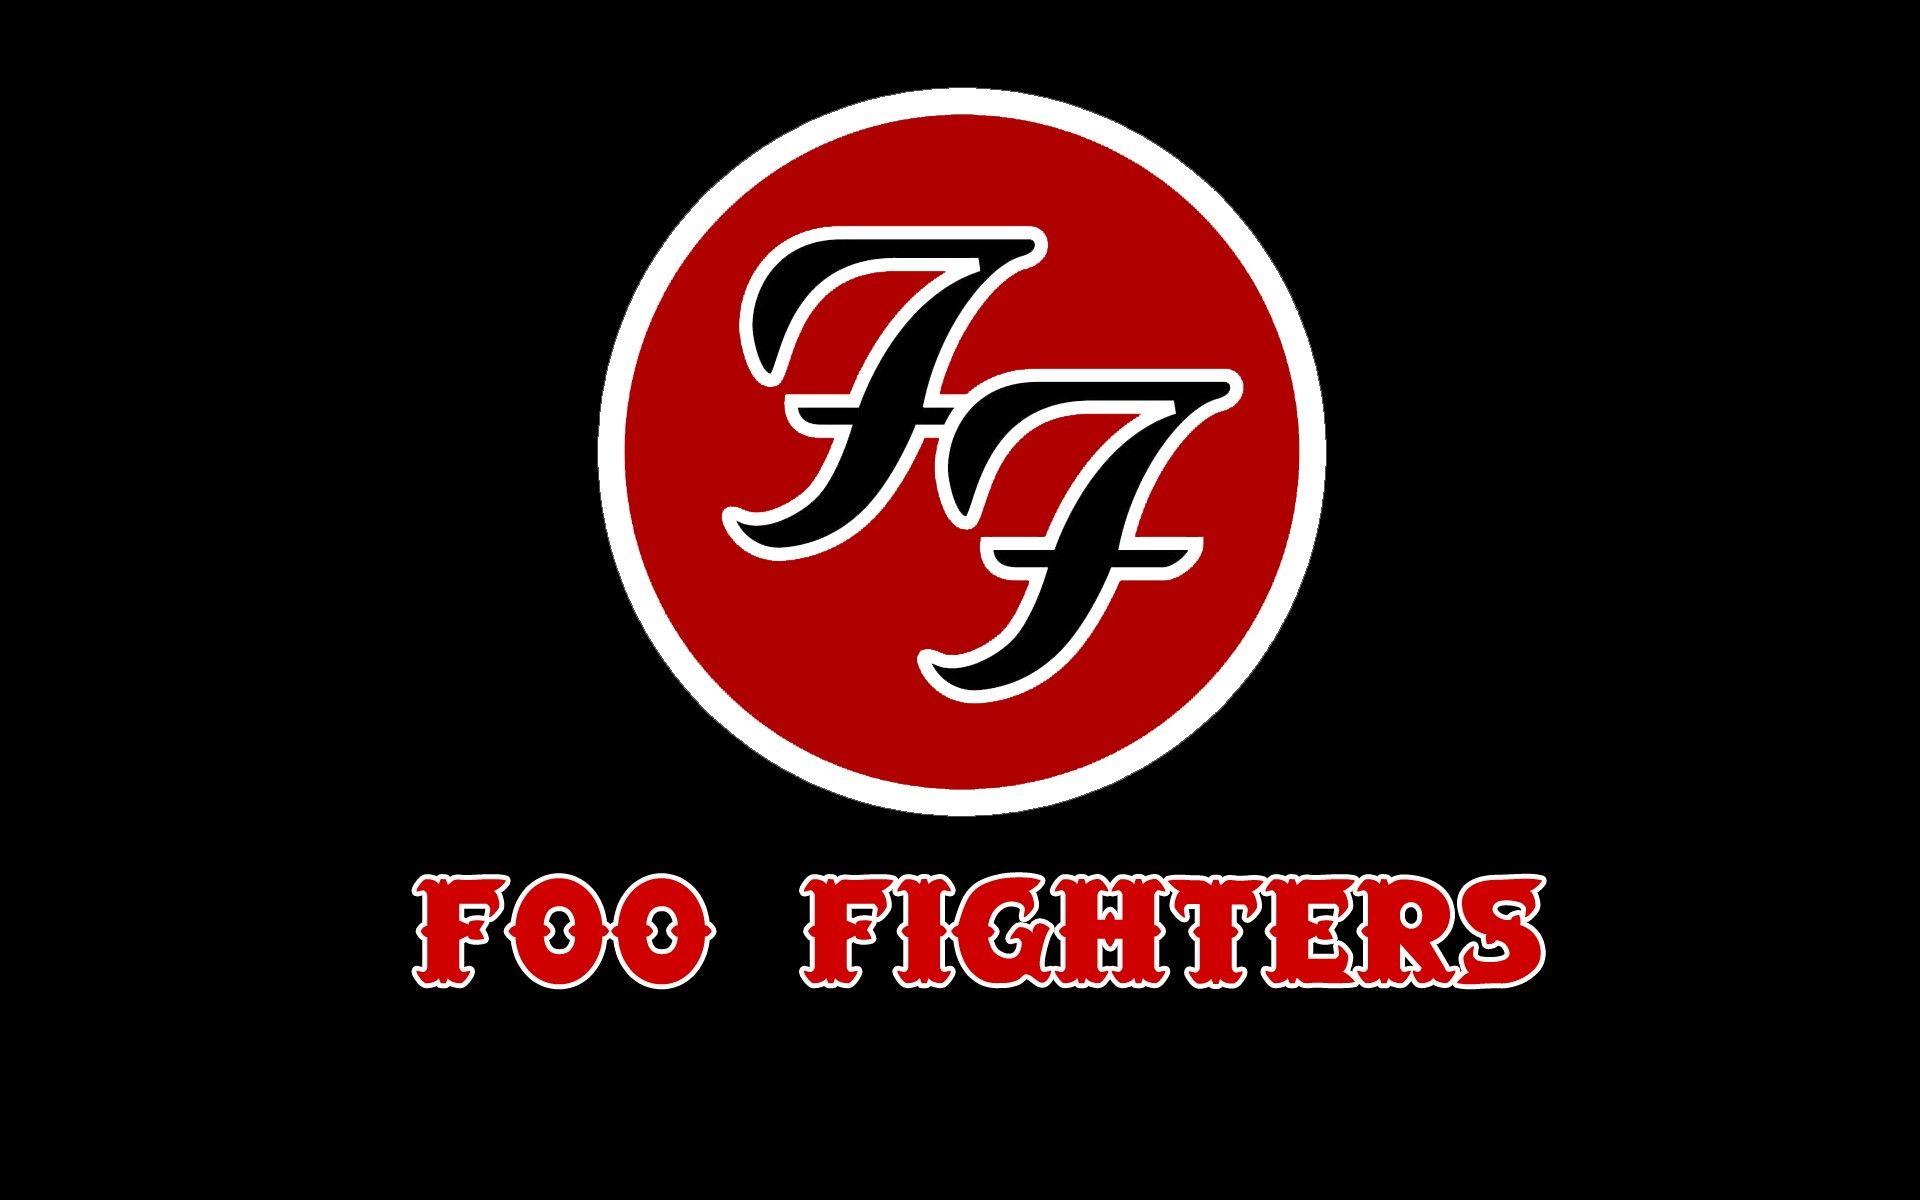 Foo Fighters. Full HD Widescreen wallpaper for desktop